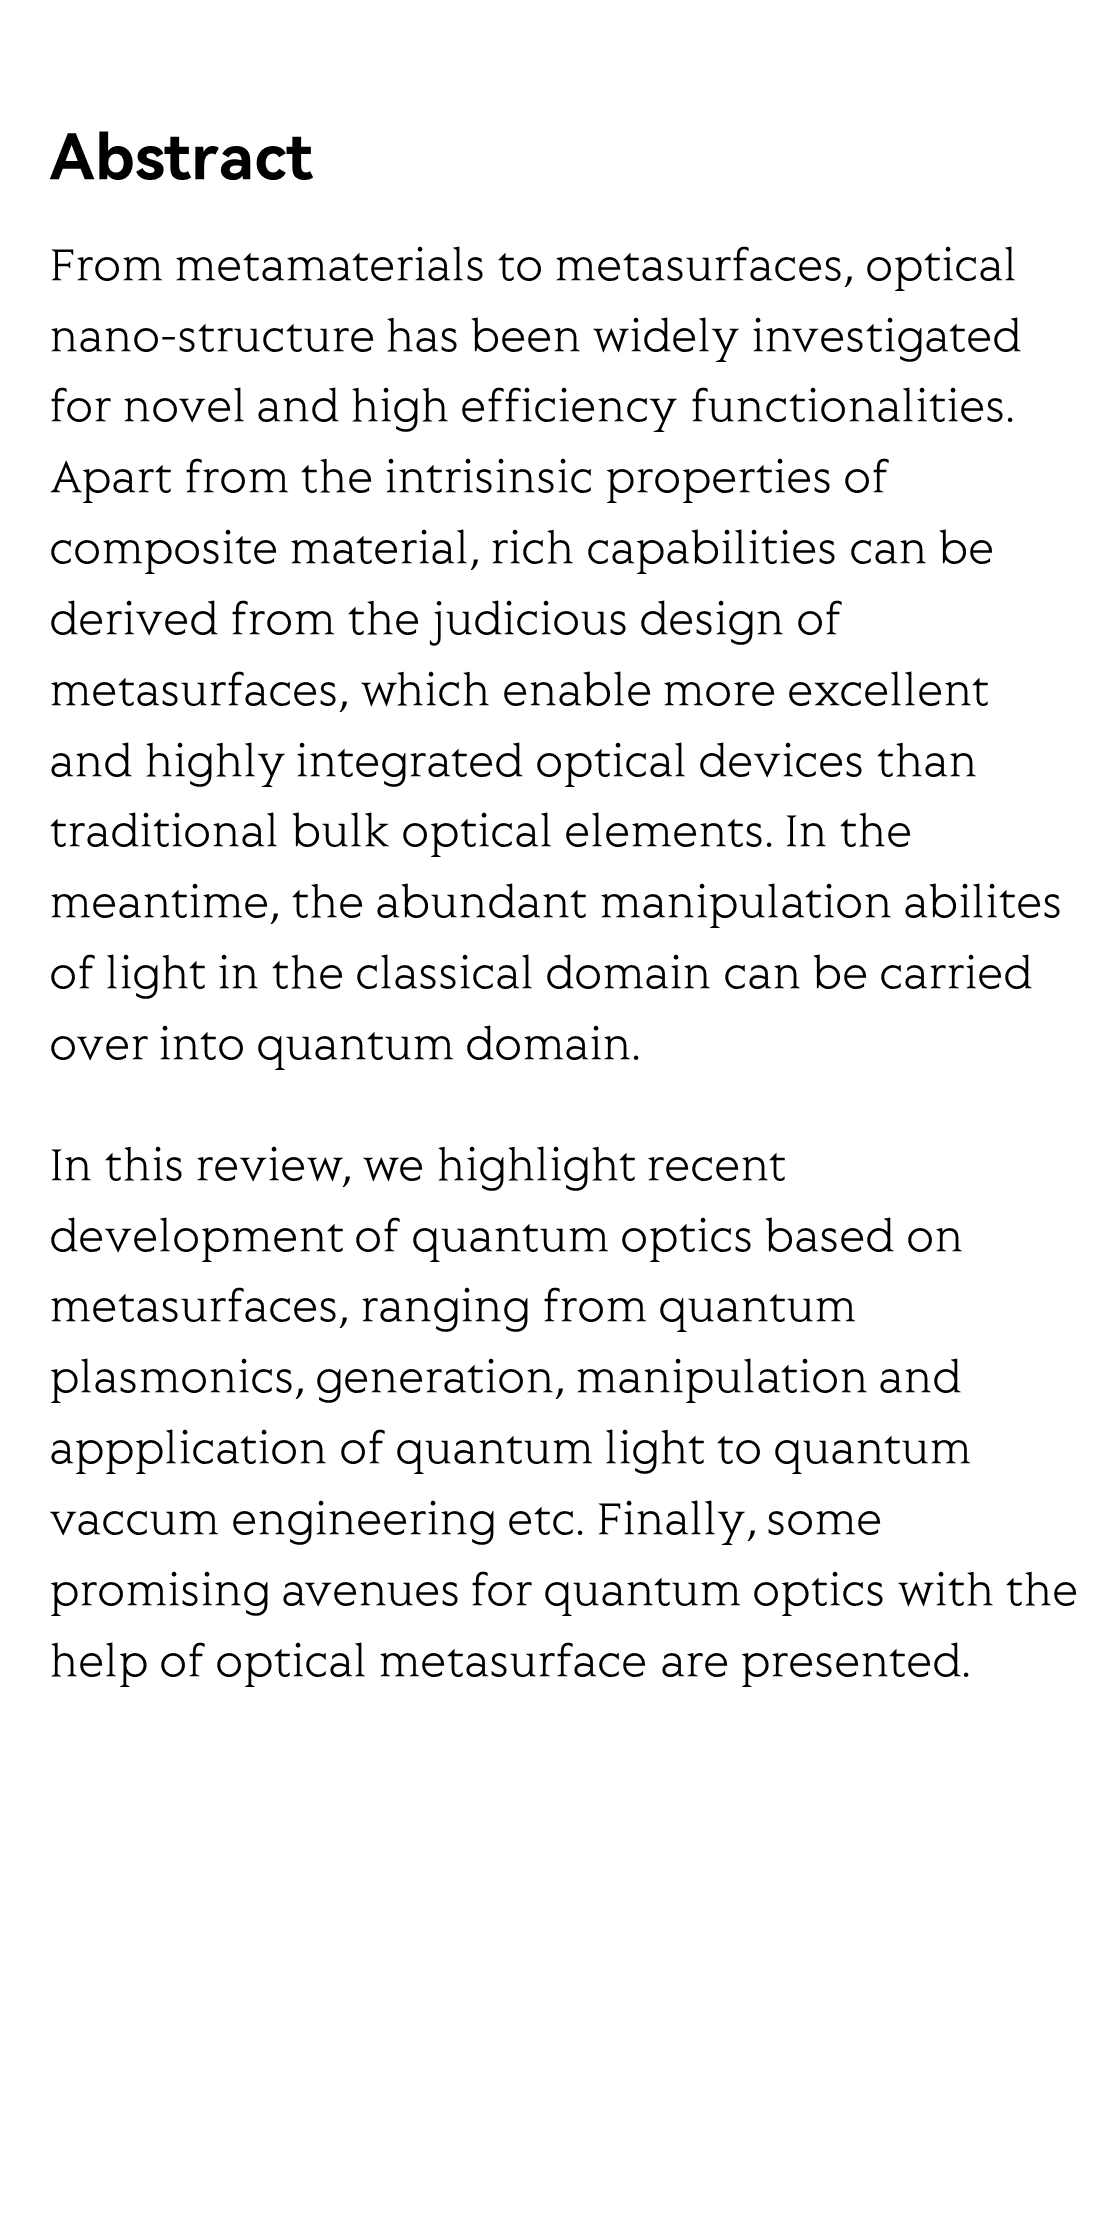 Quantum photonics based on metasurfaces_2